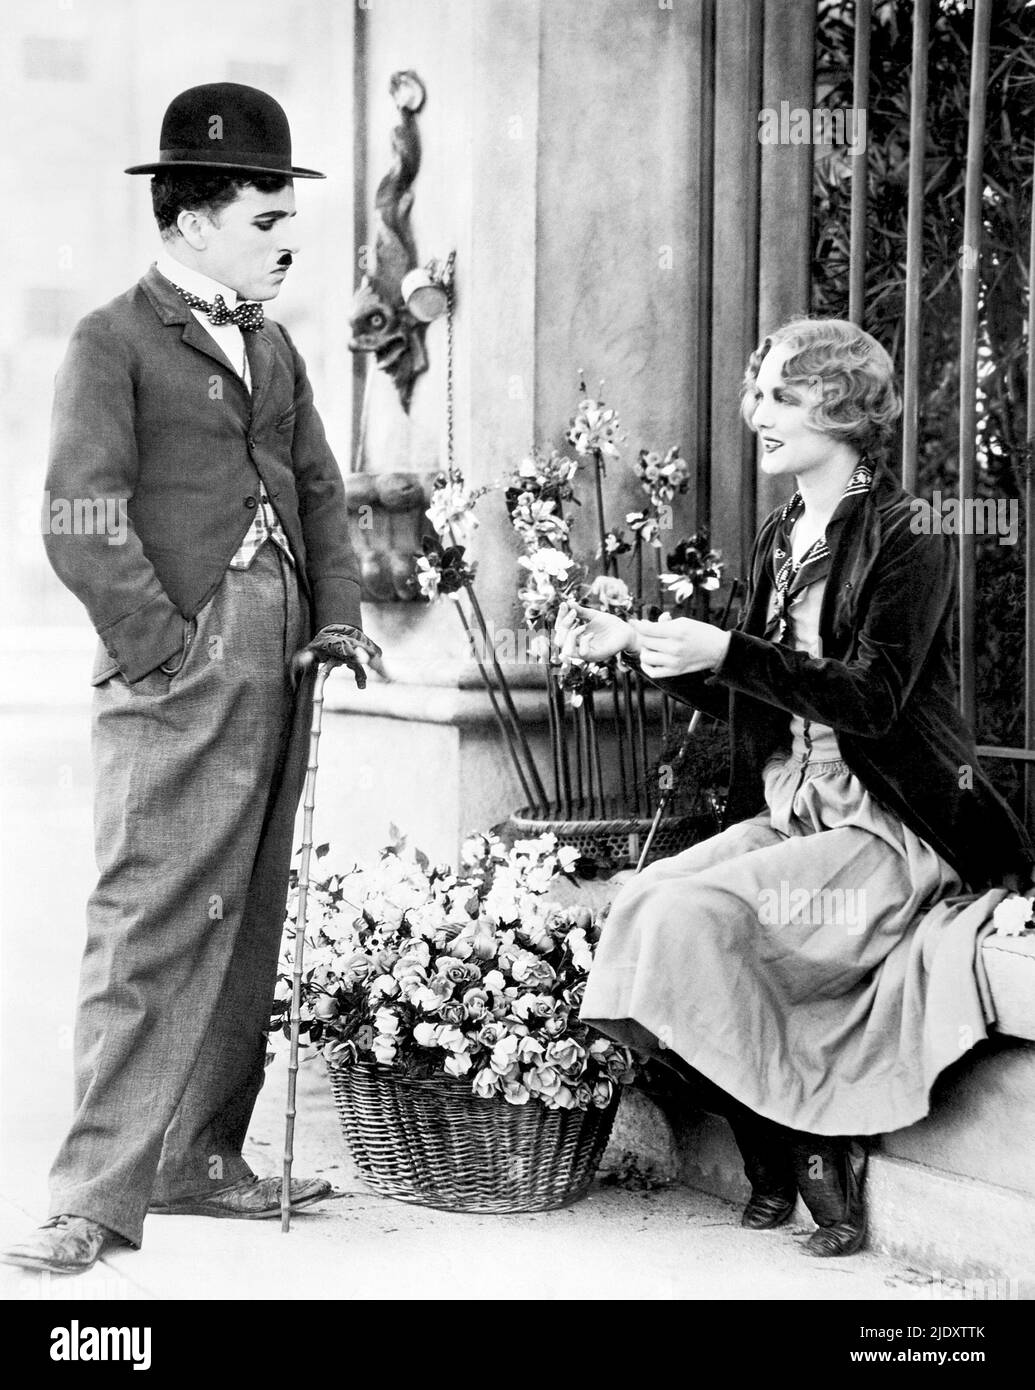 Eine Szene aus dem Charlei Chaplin Film City Lights, in der der Tramp auf das Blind Flower Girl (Virginia Cherrill) trifft und sich verliebt. Stockfoto